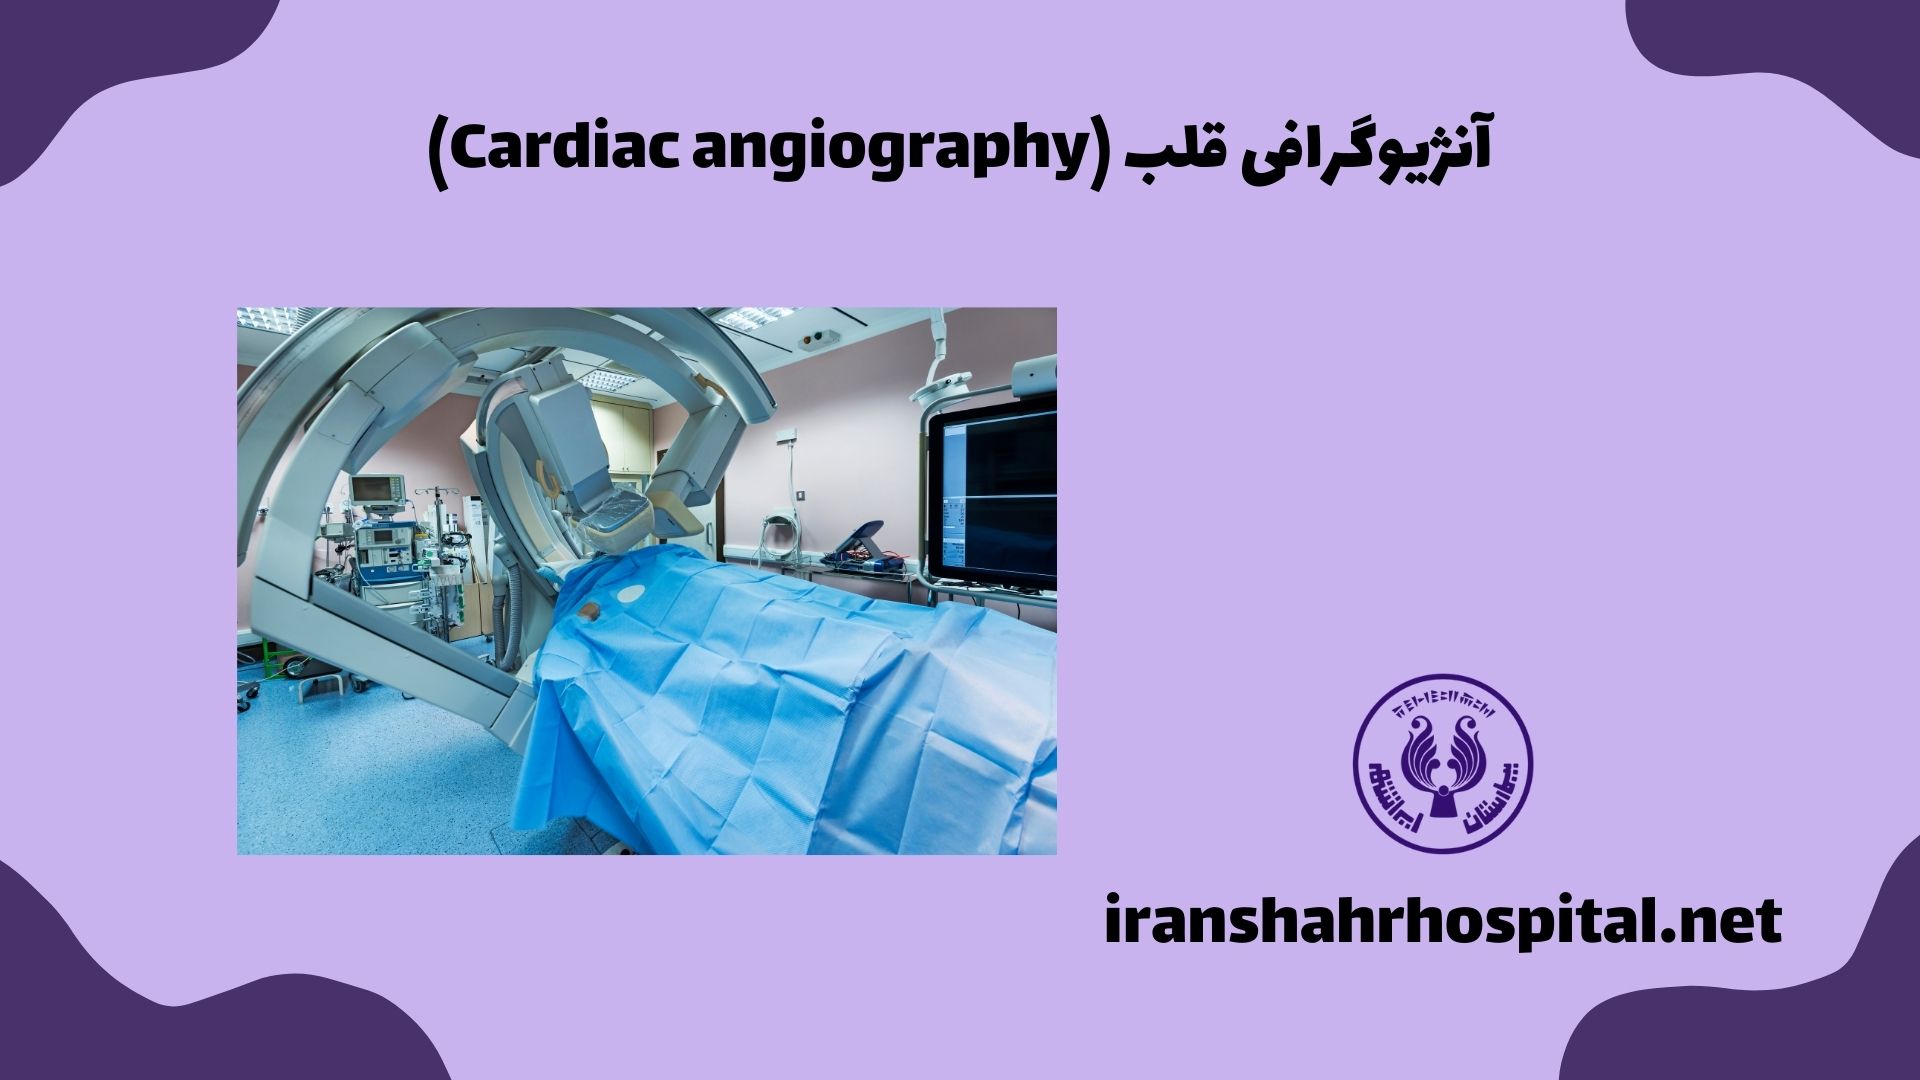 آنژیوگرافی قلب (Cardiac angiography)